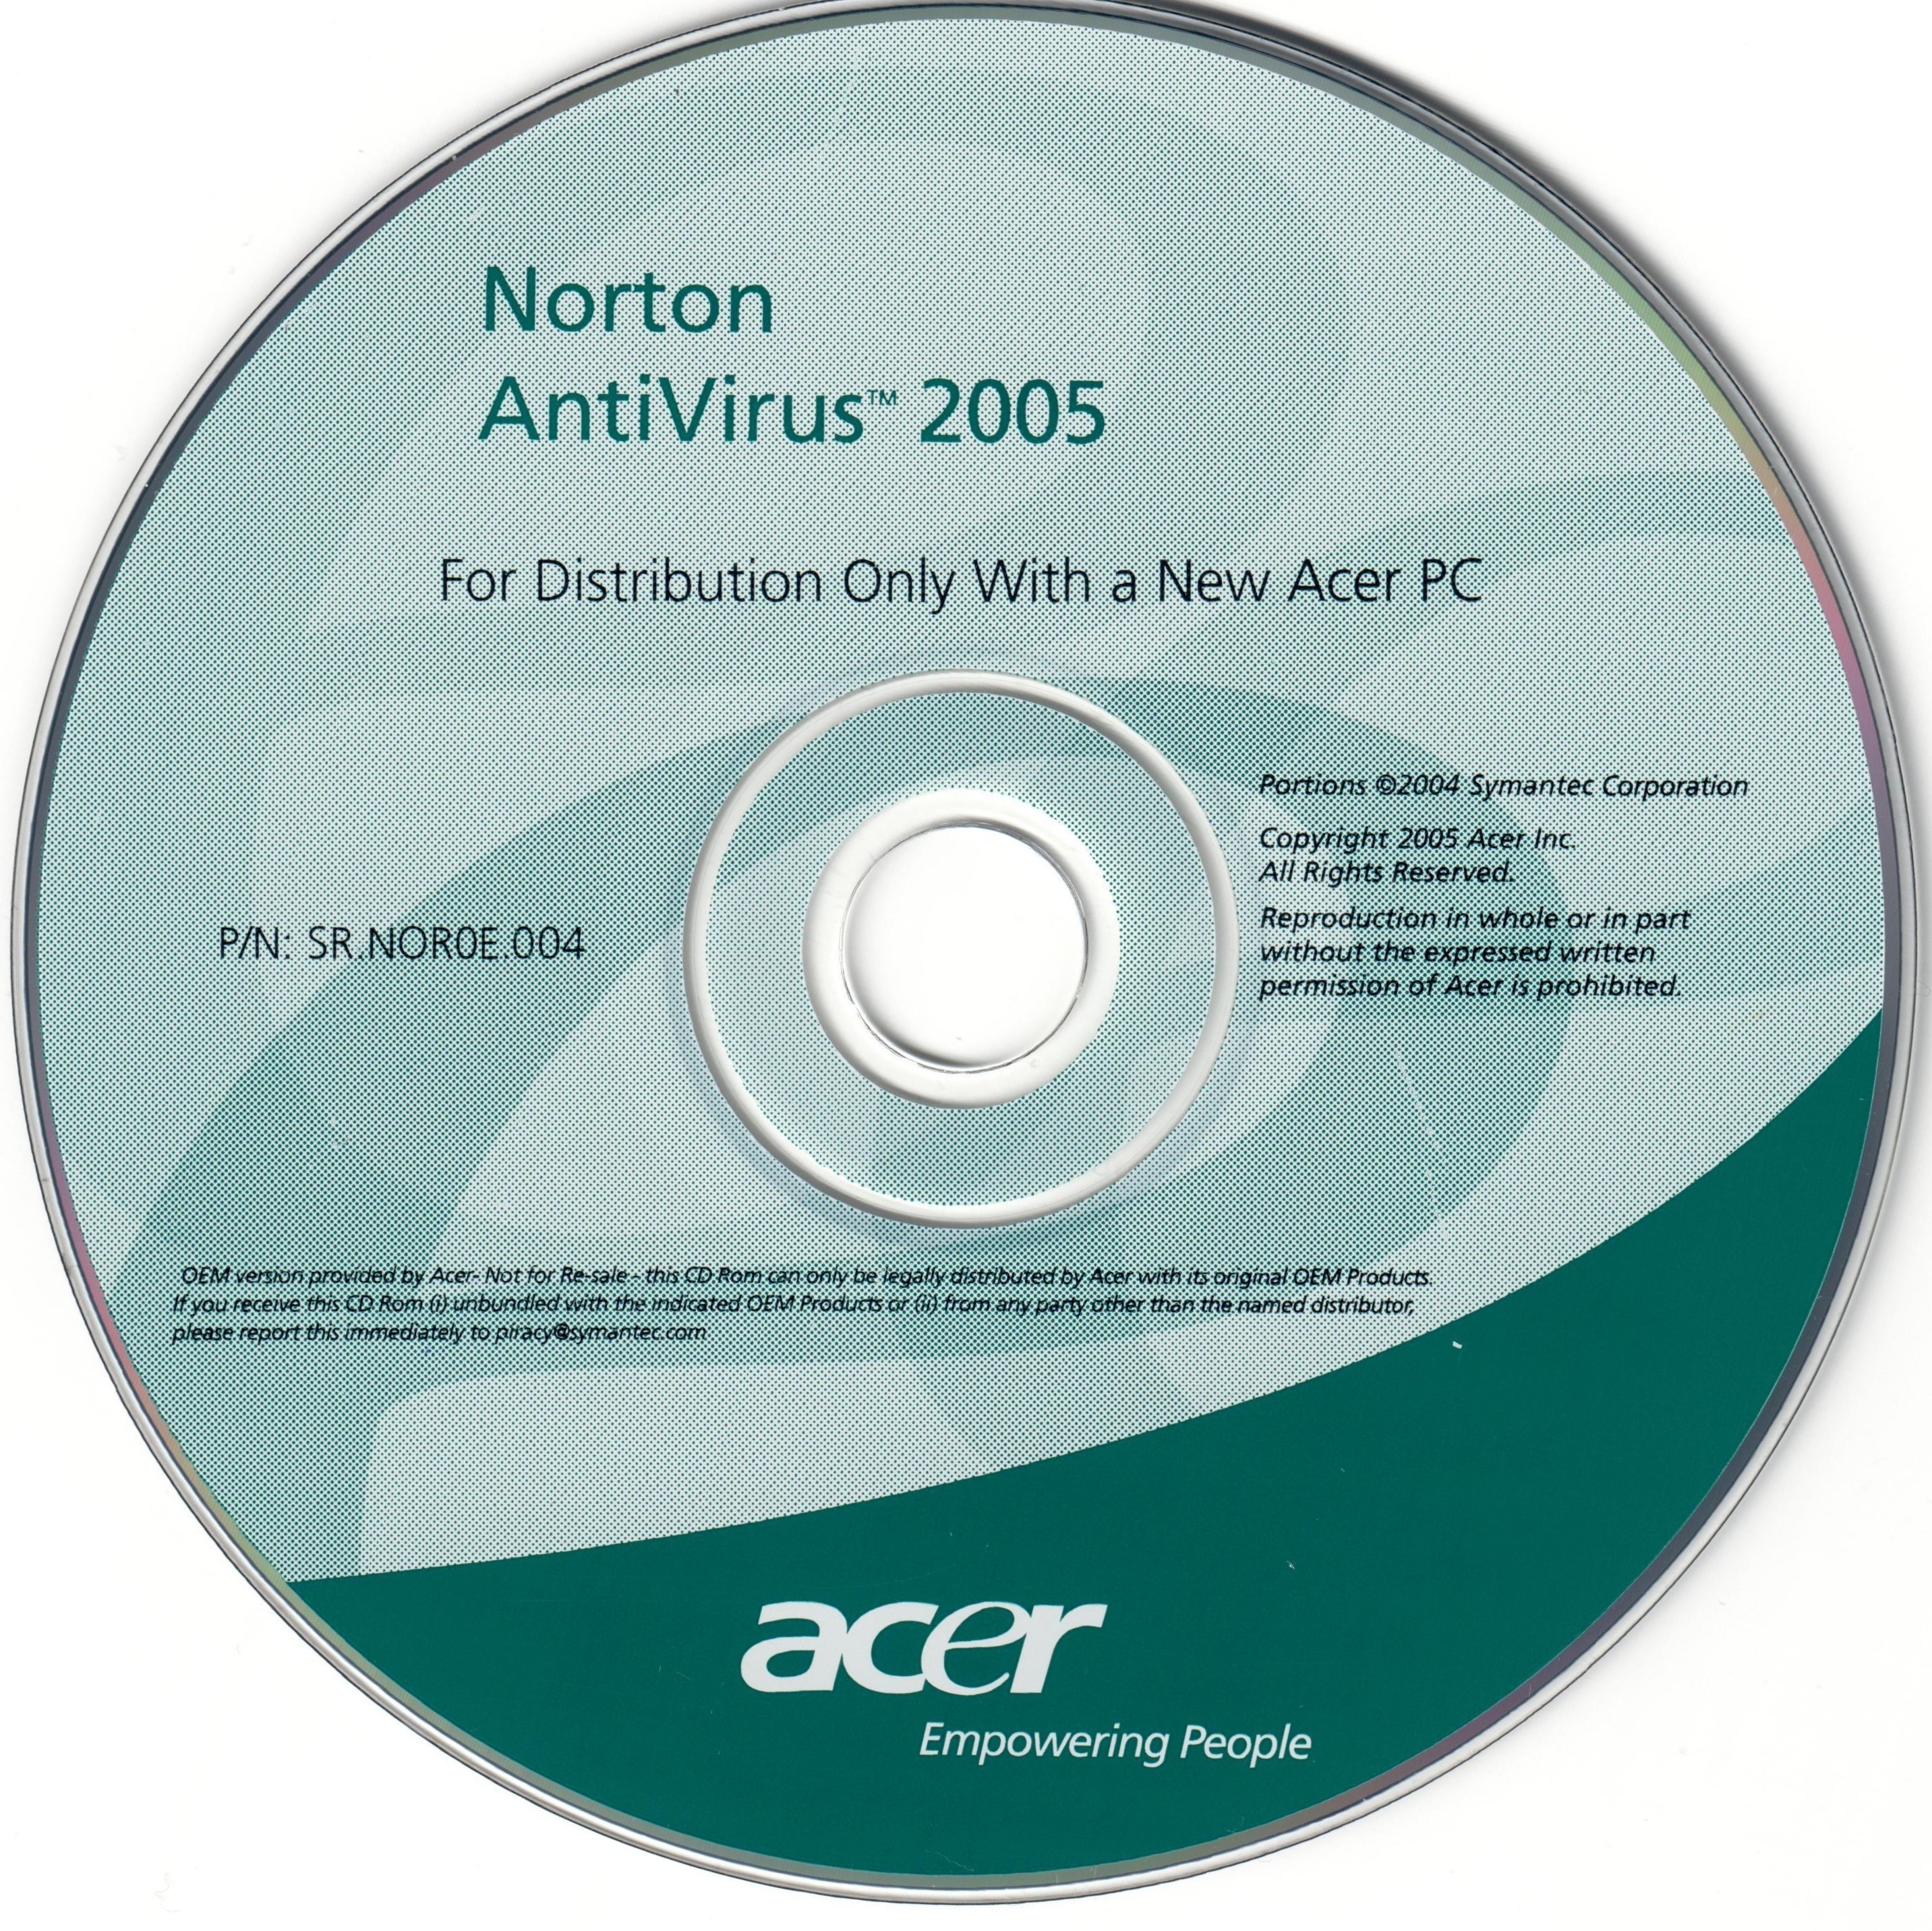 versión precisa del antivirus gratuito norton 2005